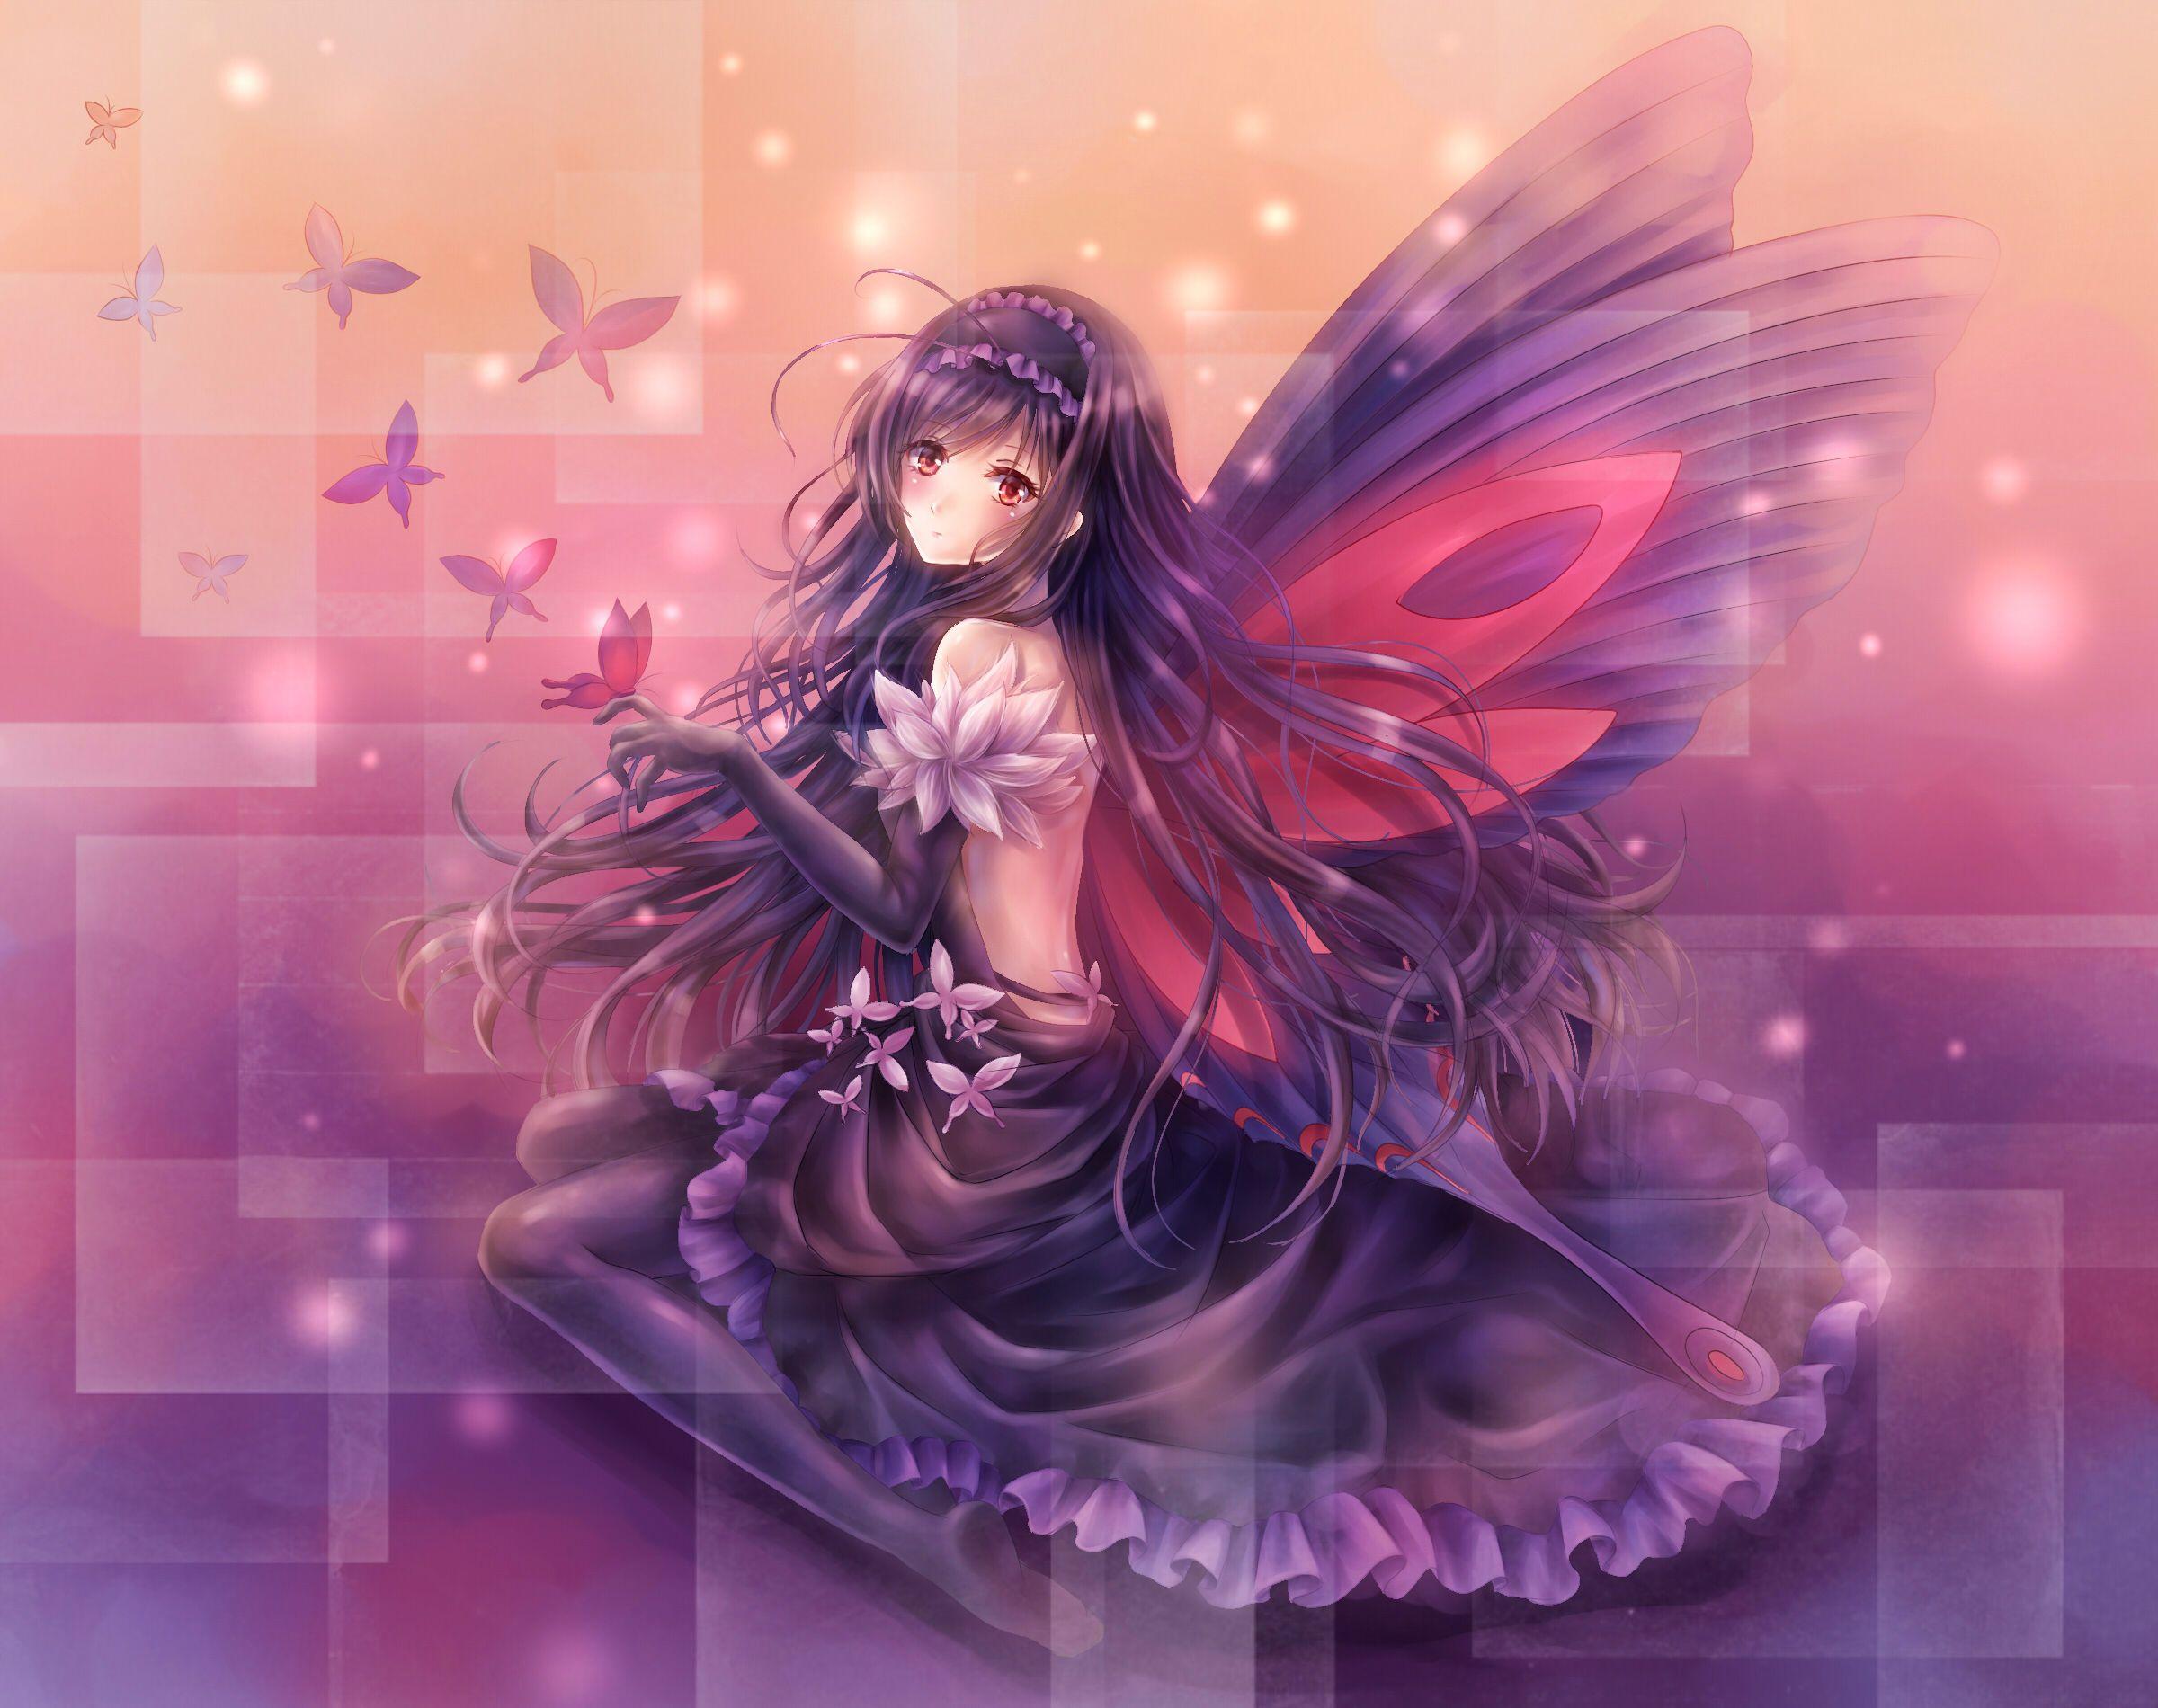 Butterfly Fairy Wallpaper. accel world art girl fairy angel